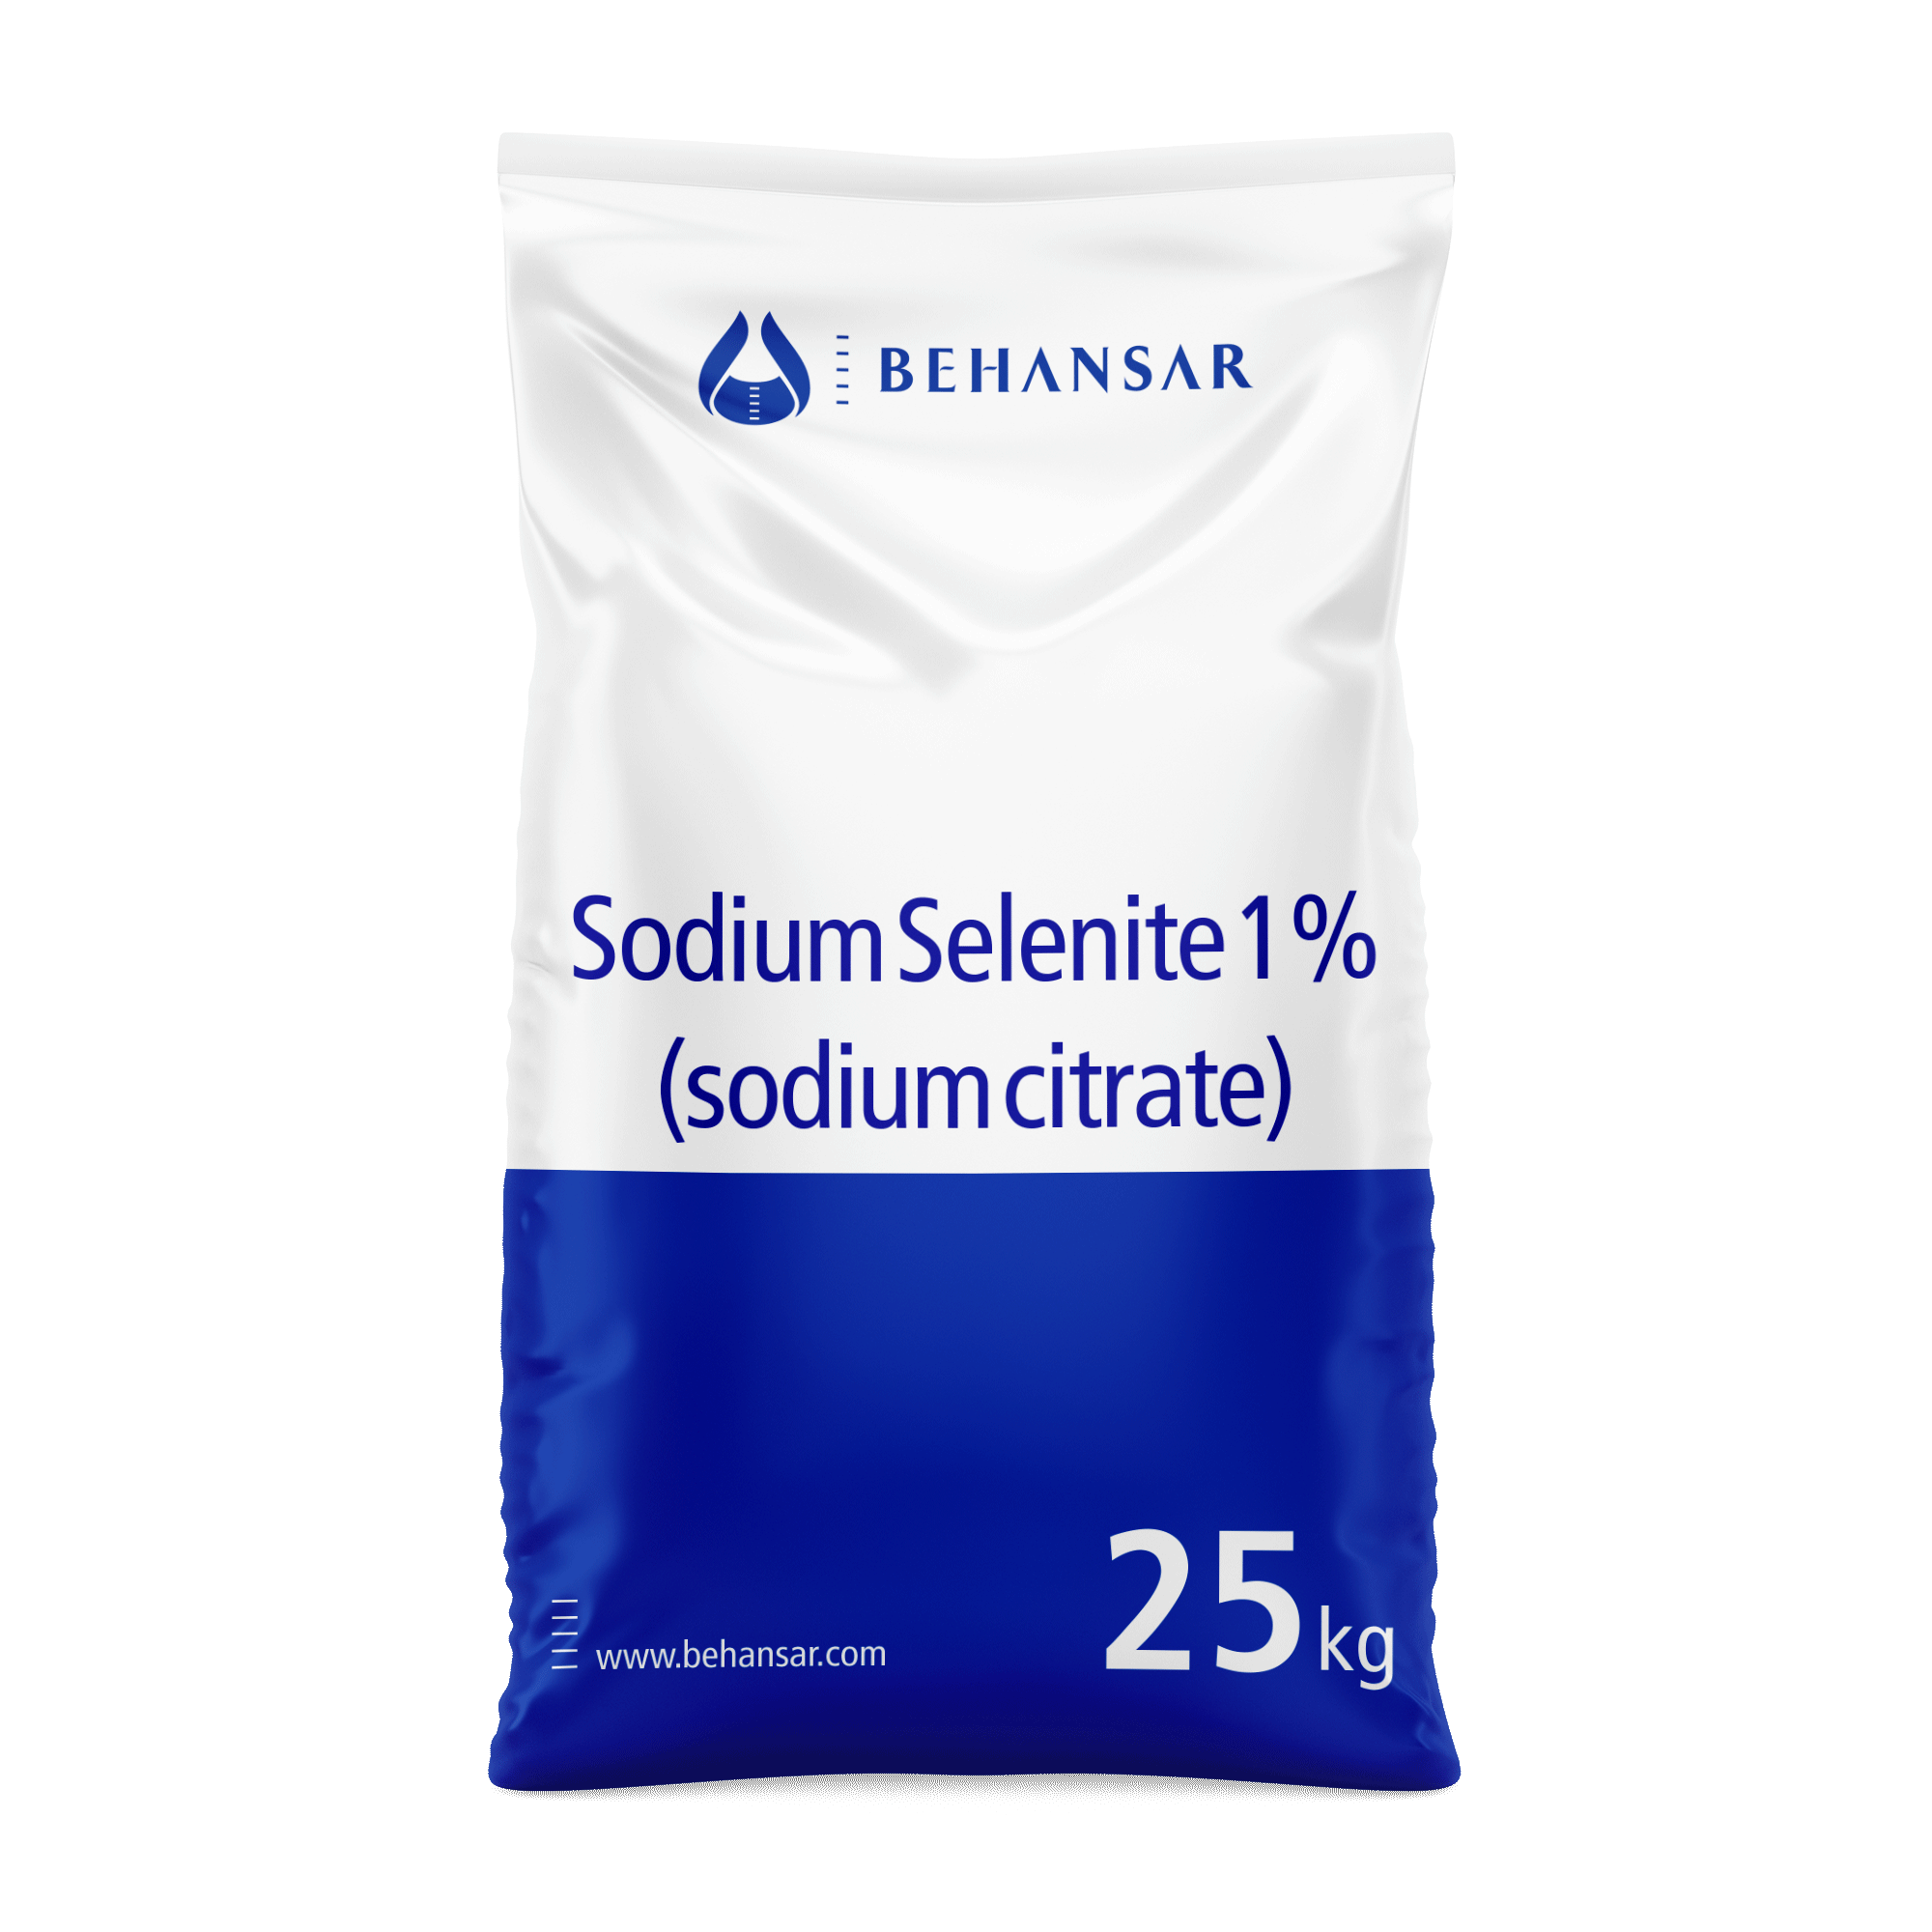 سدیم سلنیت 1% + سدیم سیترات یکی از تولیدات شرکت بهانسار است